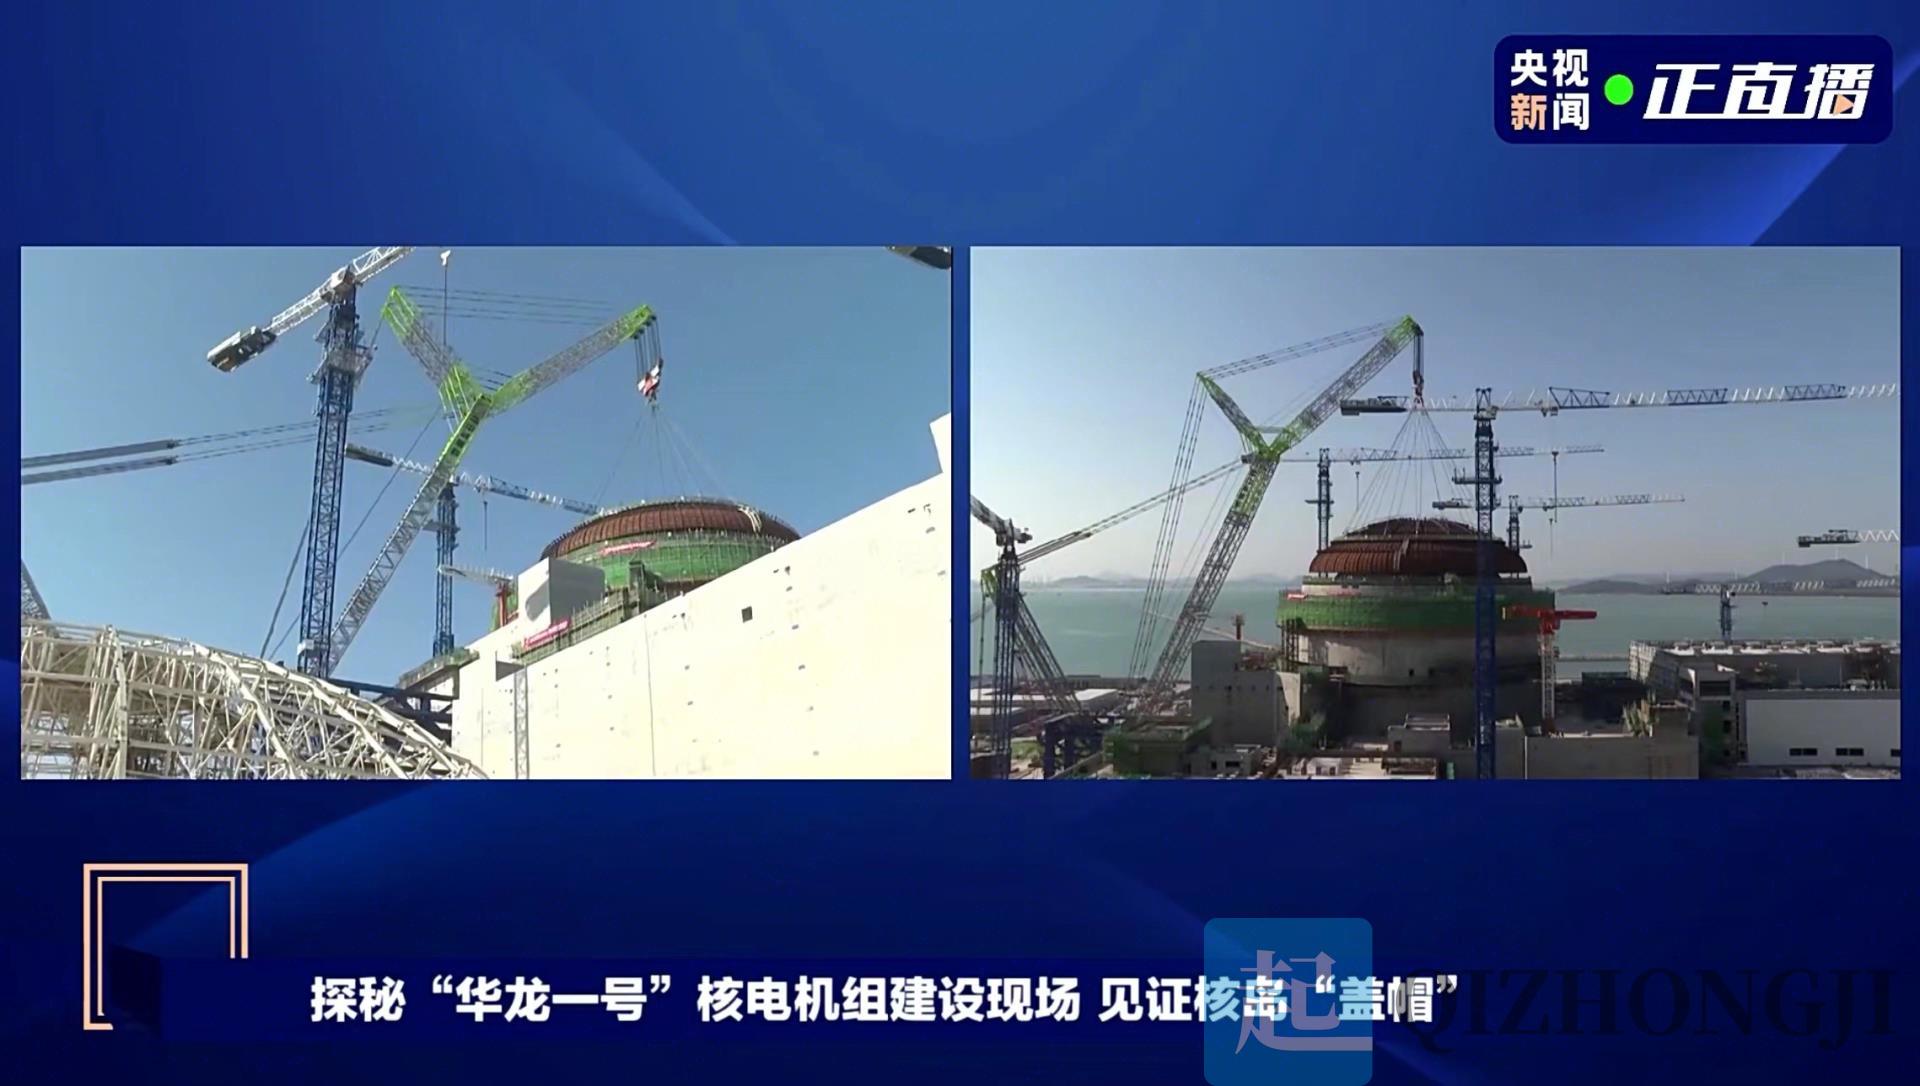 央视新闻重点关注!中联重科3600吨起重机助力核电建设再秀硬实力